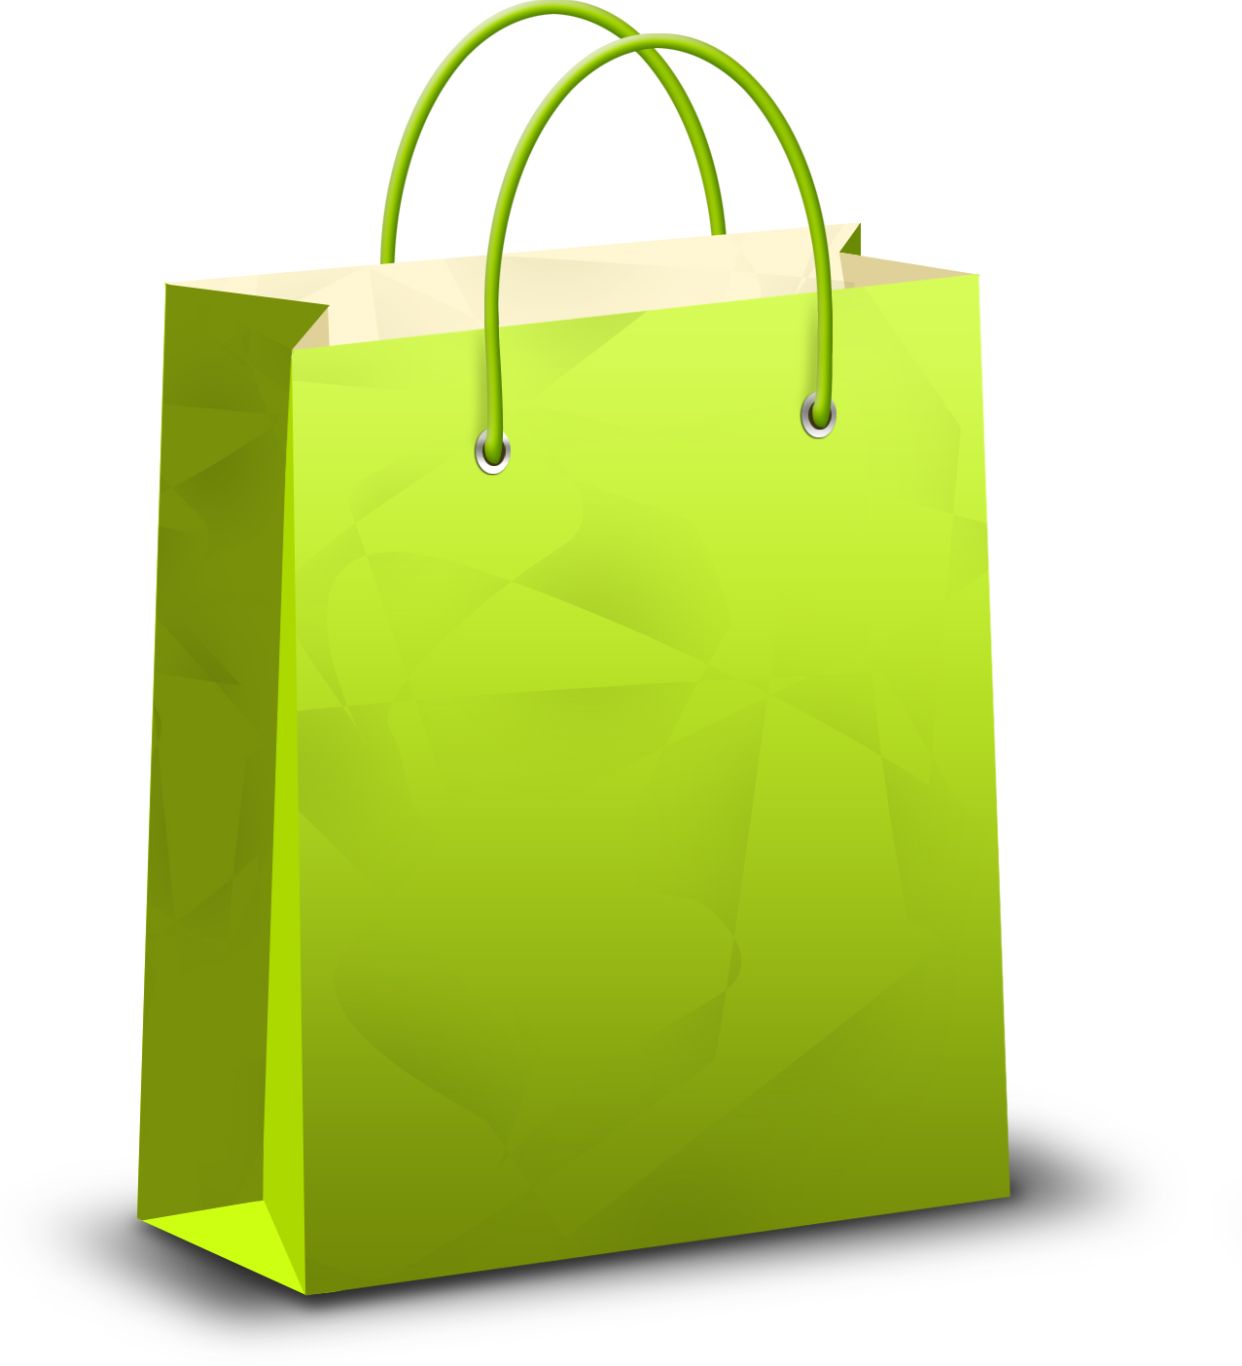 Shopping bag PNG image    图片编号:6369